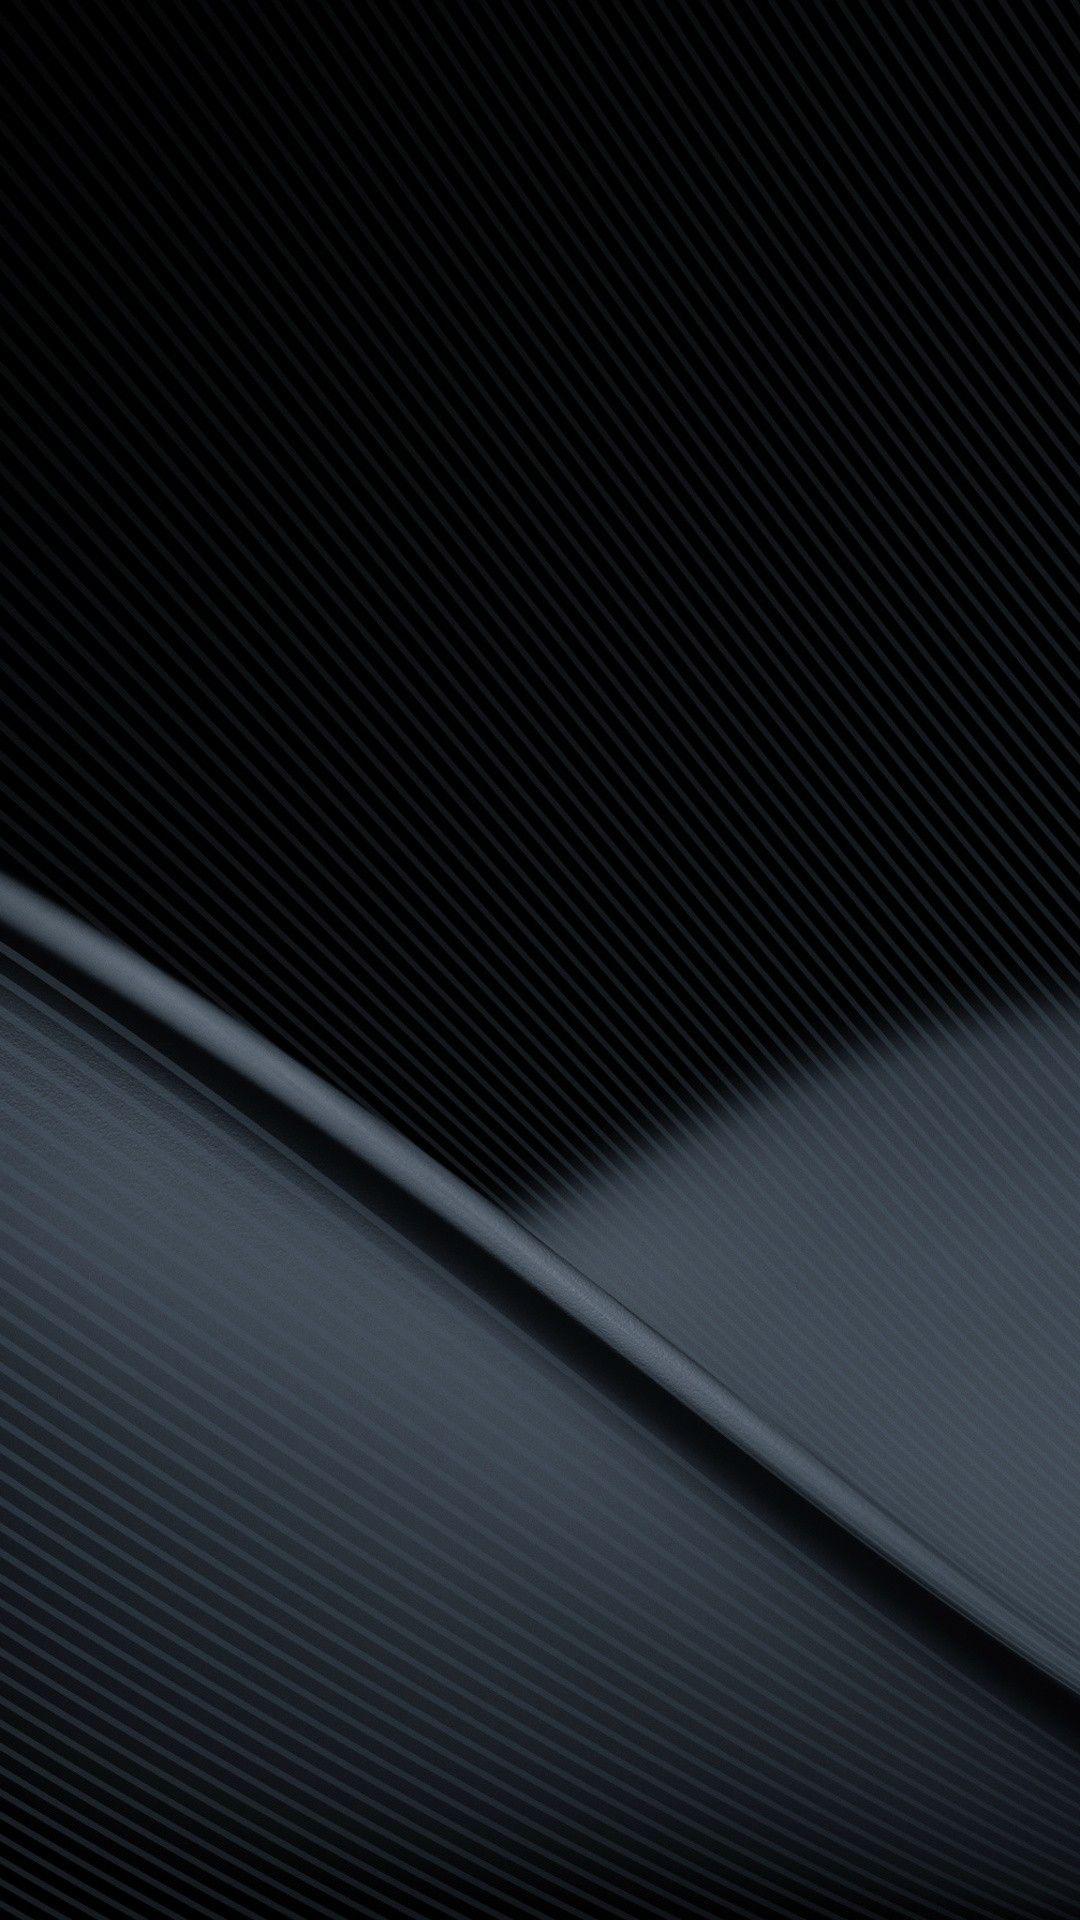 Black phone wallpaper. Black phone wallpaper, Android wallpaper black, Android wallpaper